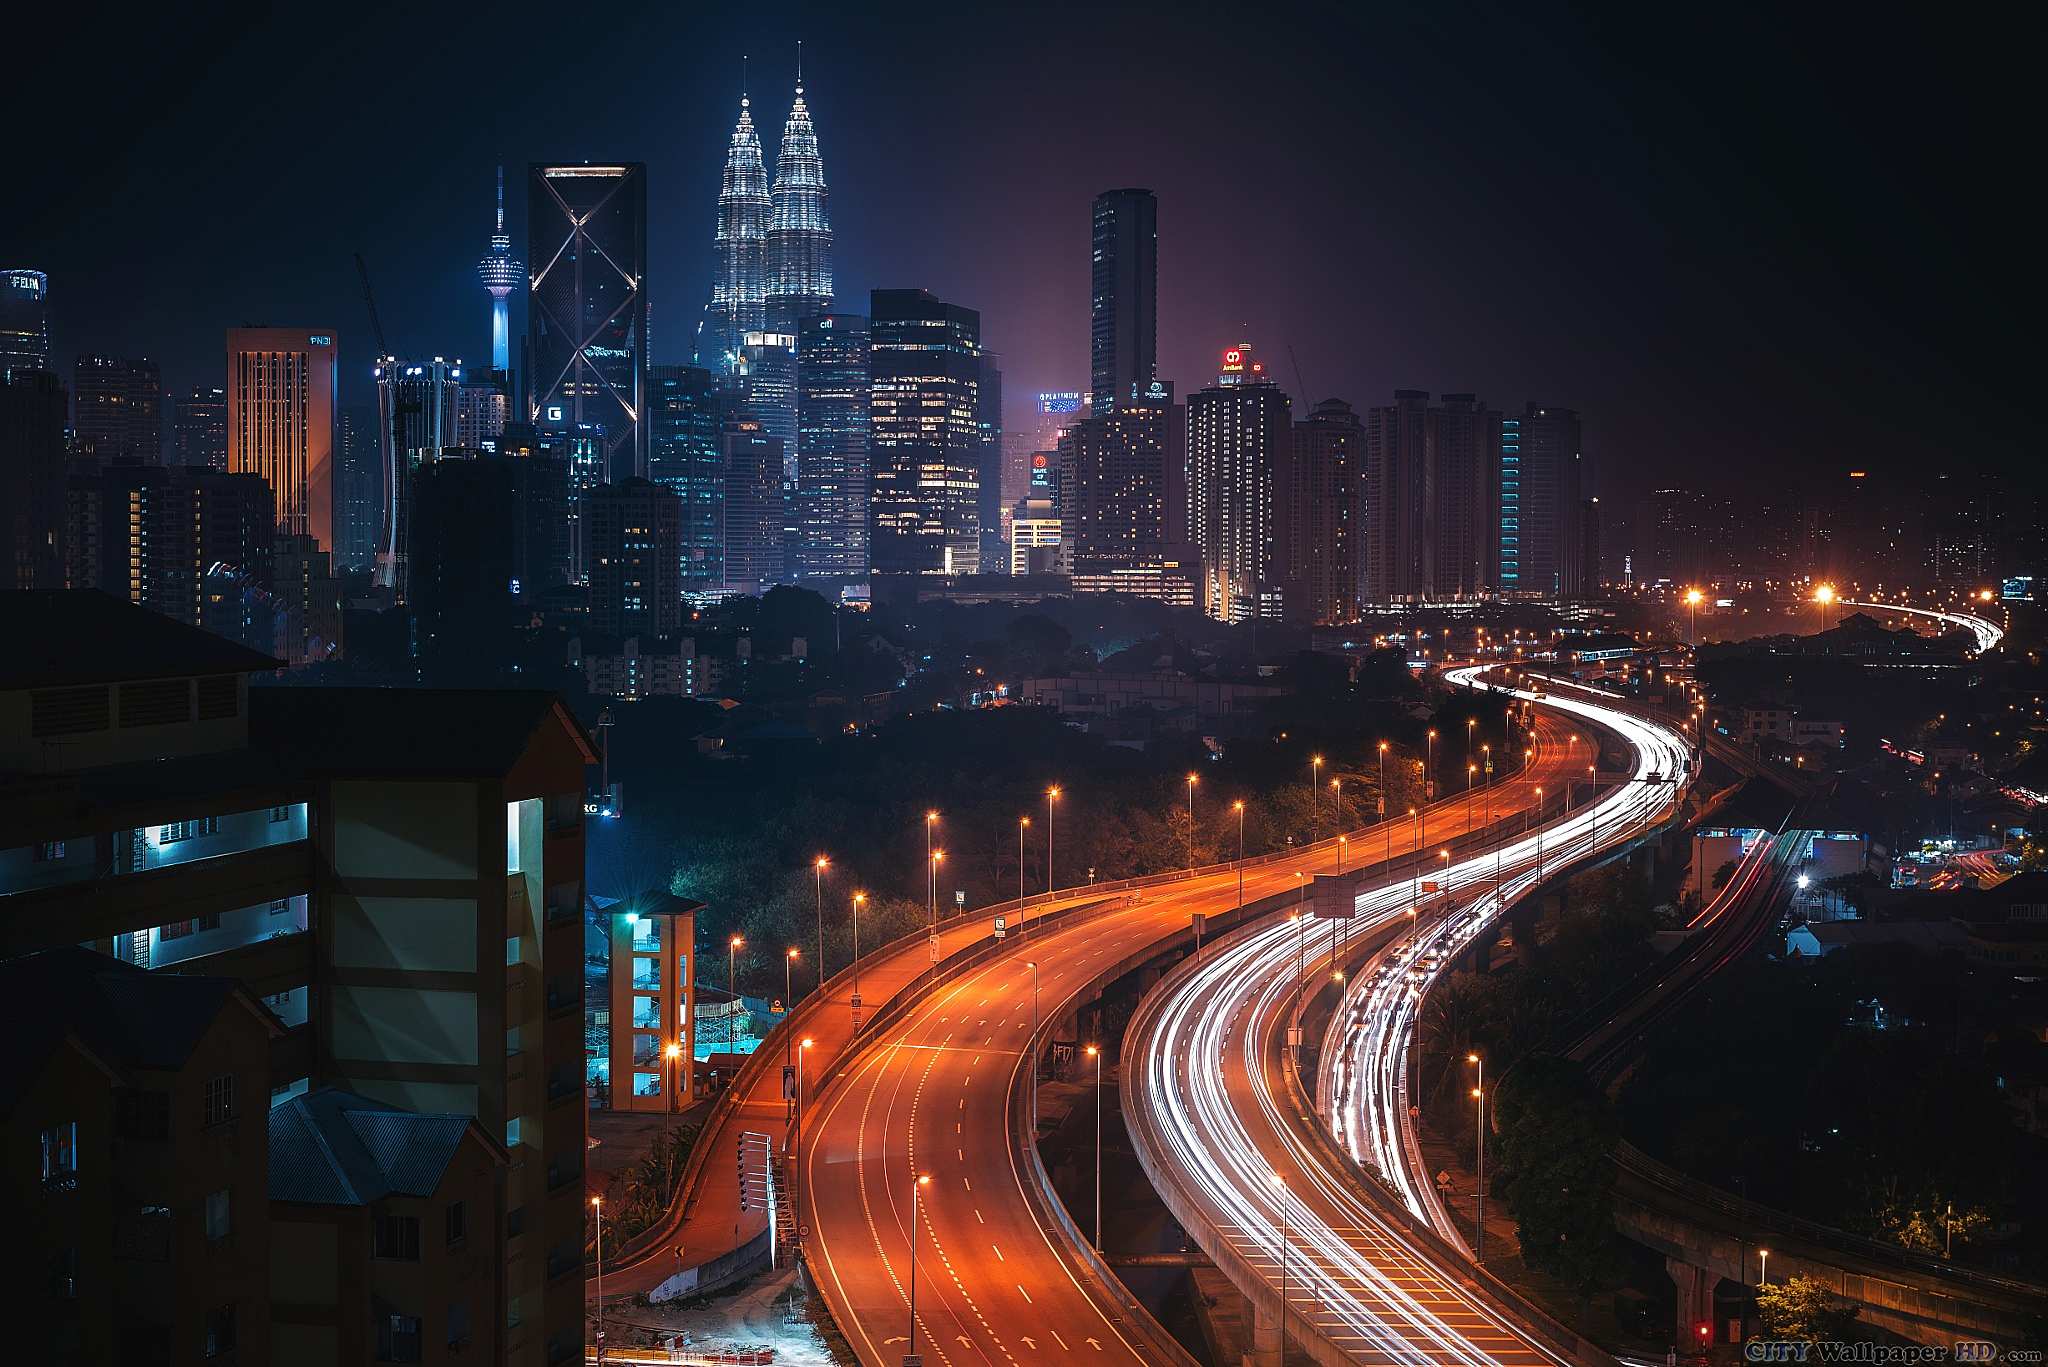 Kuala Lumpur wallpaper. Wallpaper of cities for mobile phones